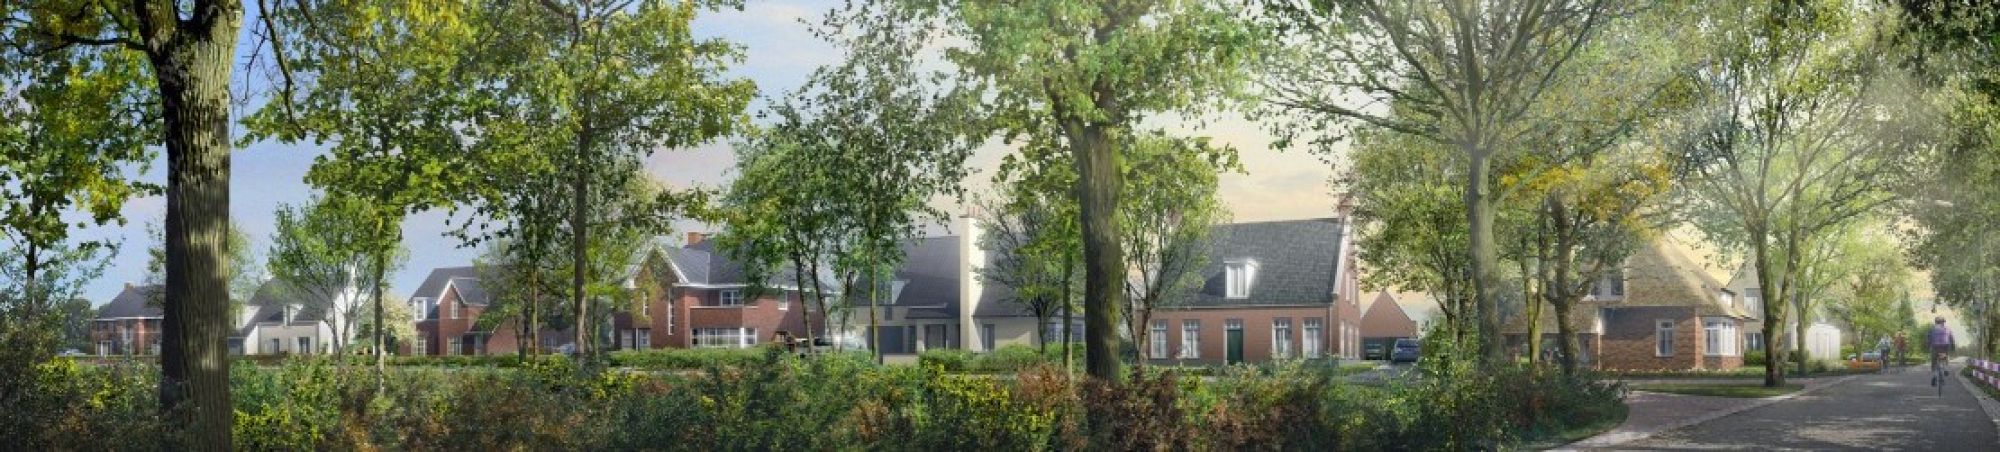 ruimte voor bouwkavels in Brabant